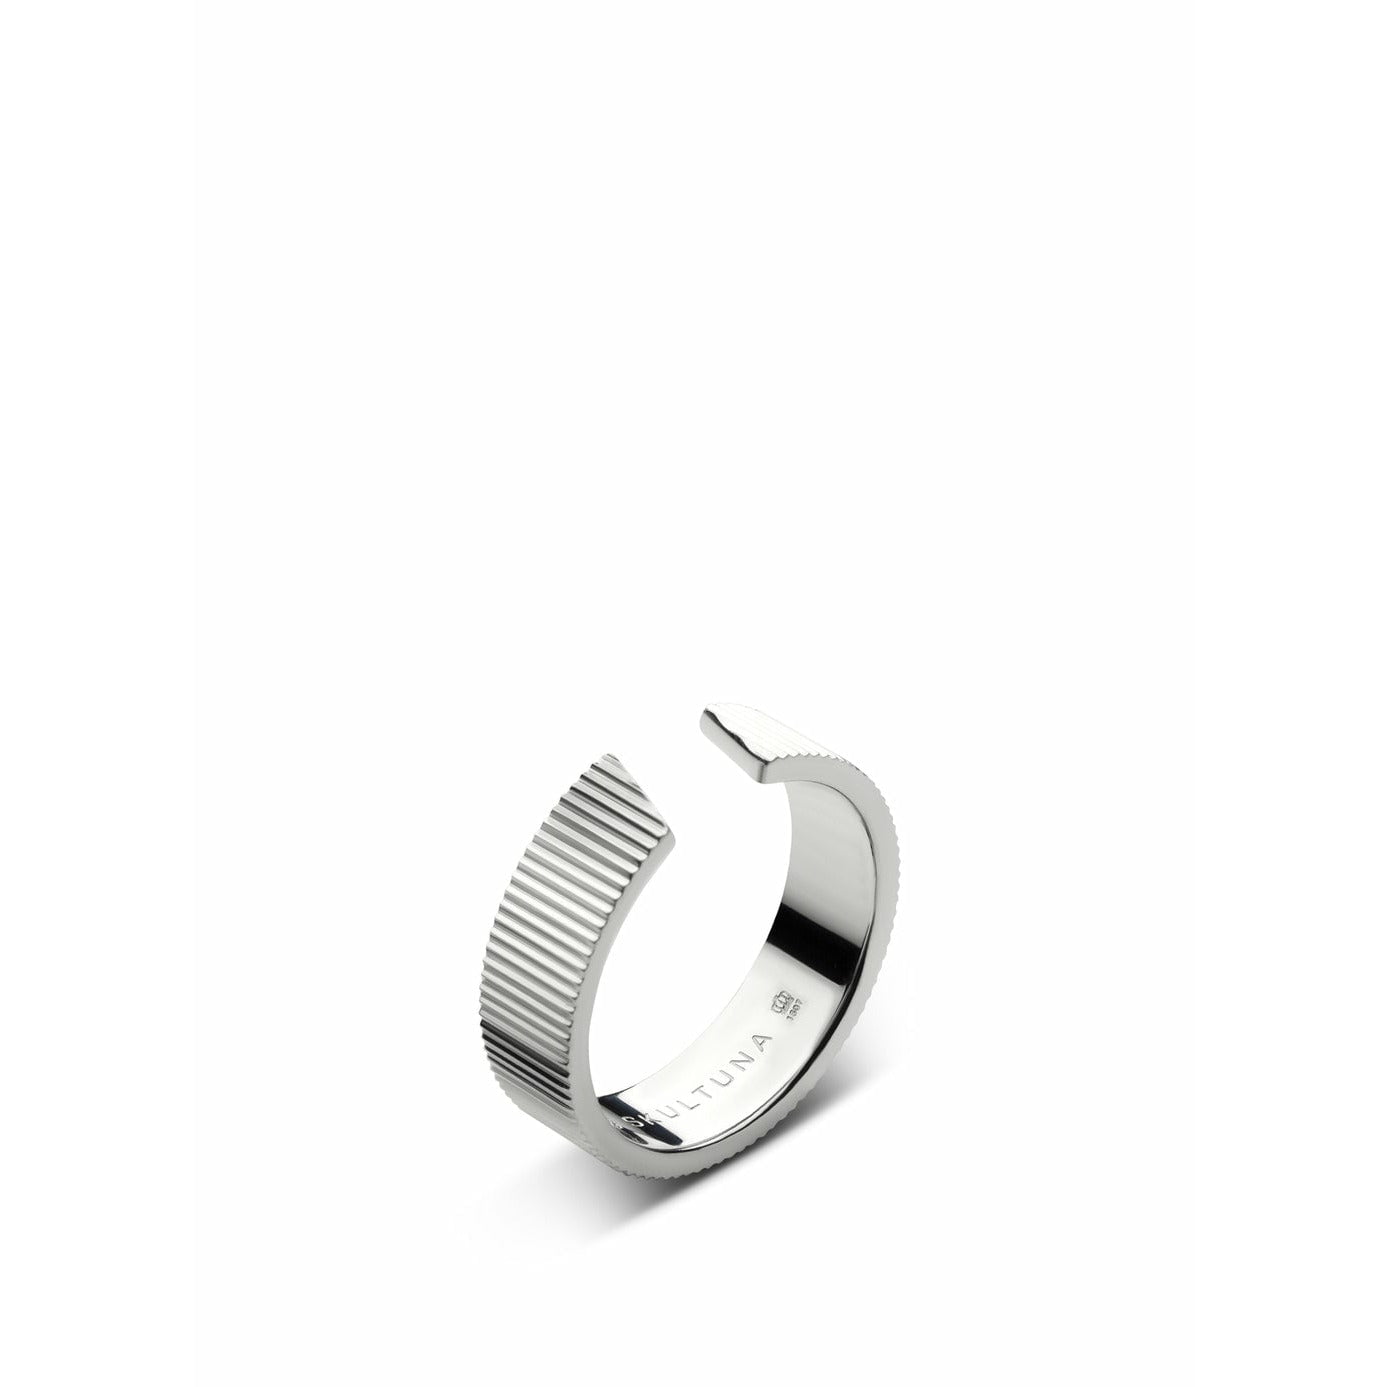 Skultuna gerippter Ring Weit kleiner polierter Stahl, Ø1,6 cm